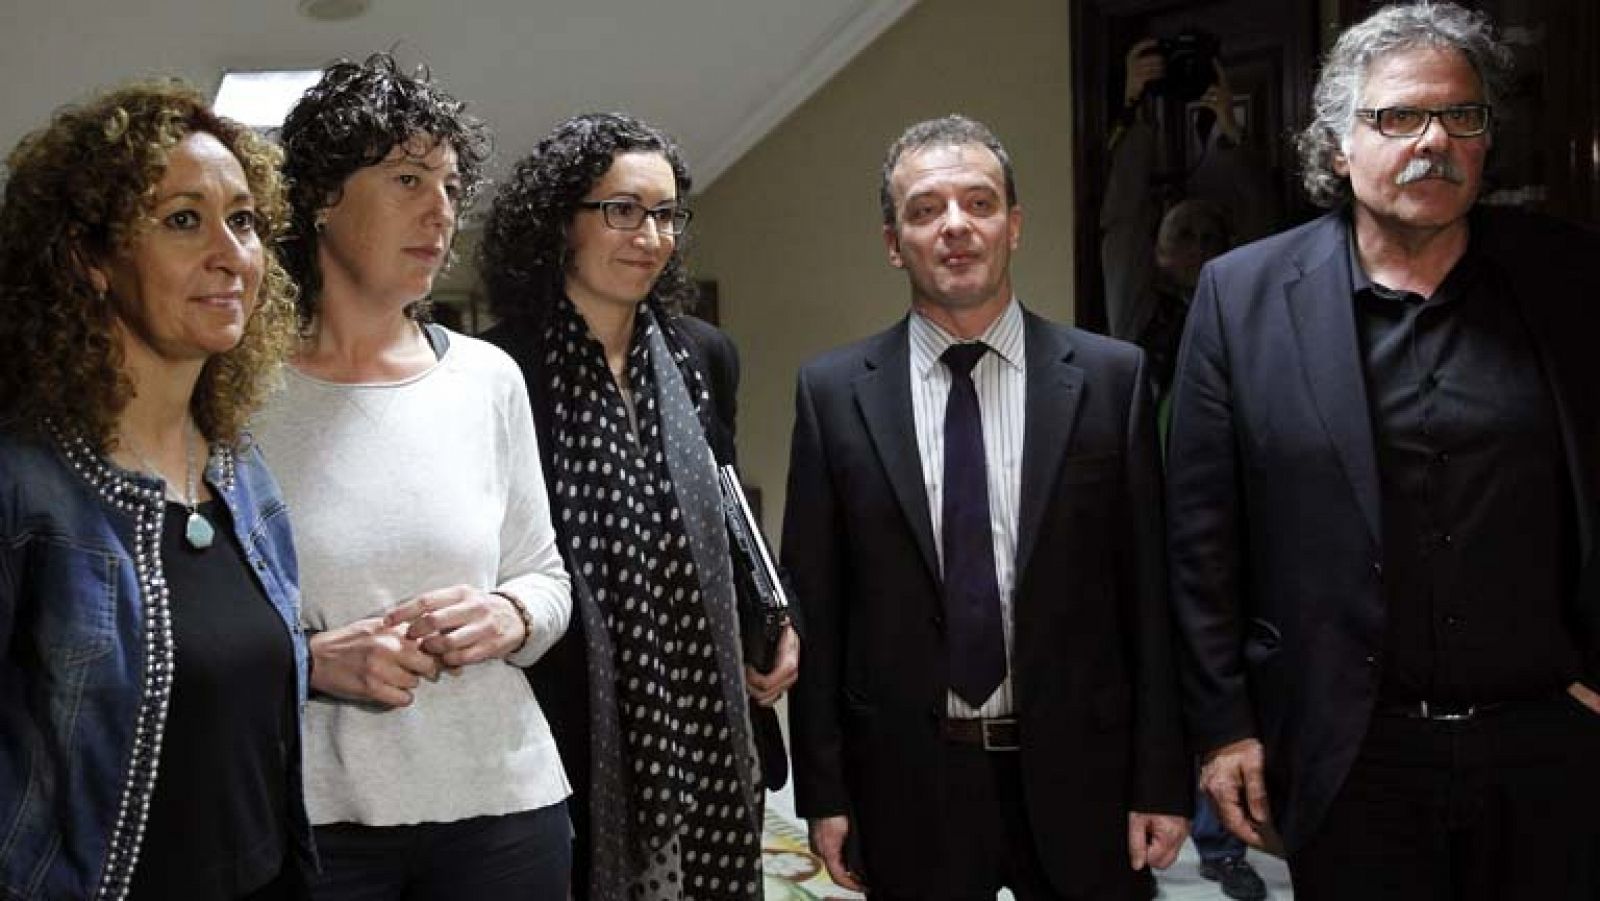 La delegación catalana defenderá en el Congreso la consulta porque "es cuestión de voluntad política"